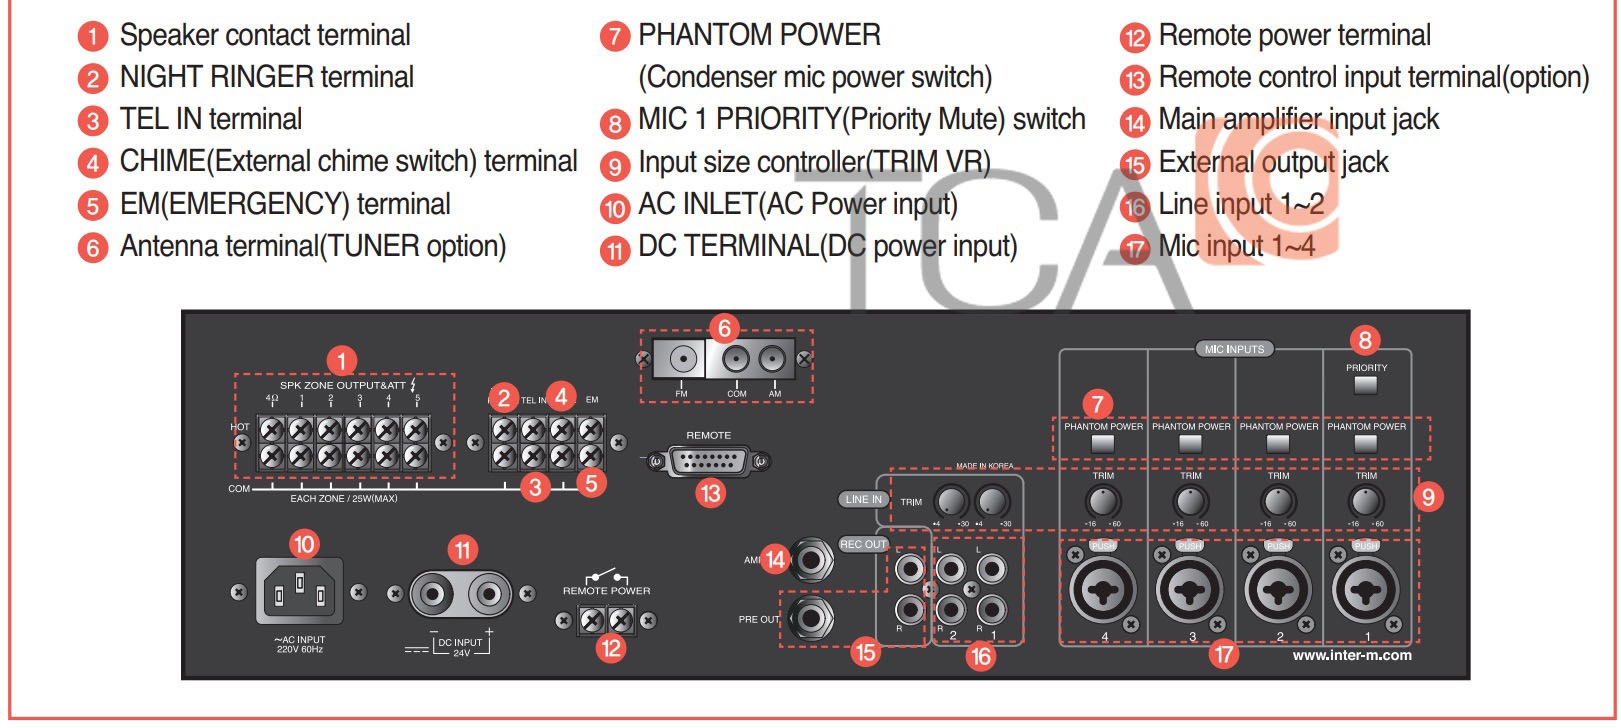 Hướng dẫn sử dụng và kết nối amply mixer inter-M PAM-510